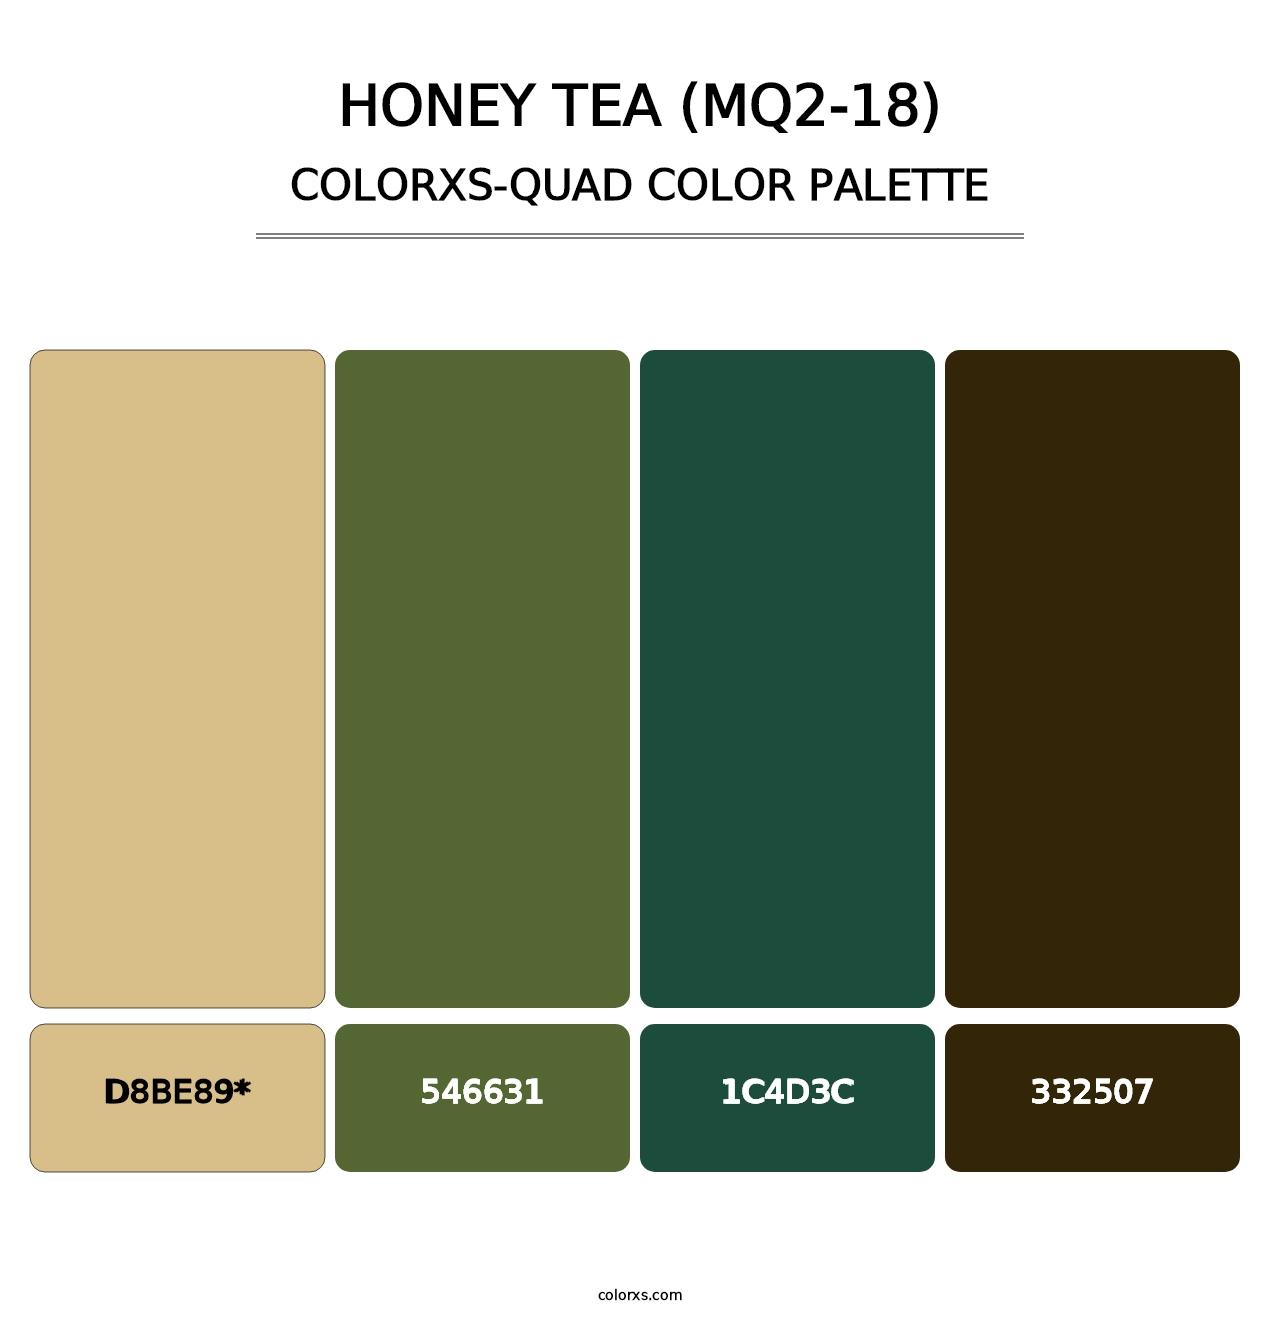 Honey Tea (MQ2-18) - Colorxs Quad Palette